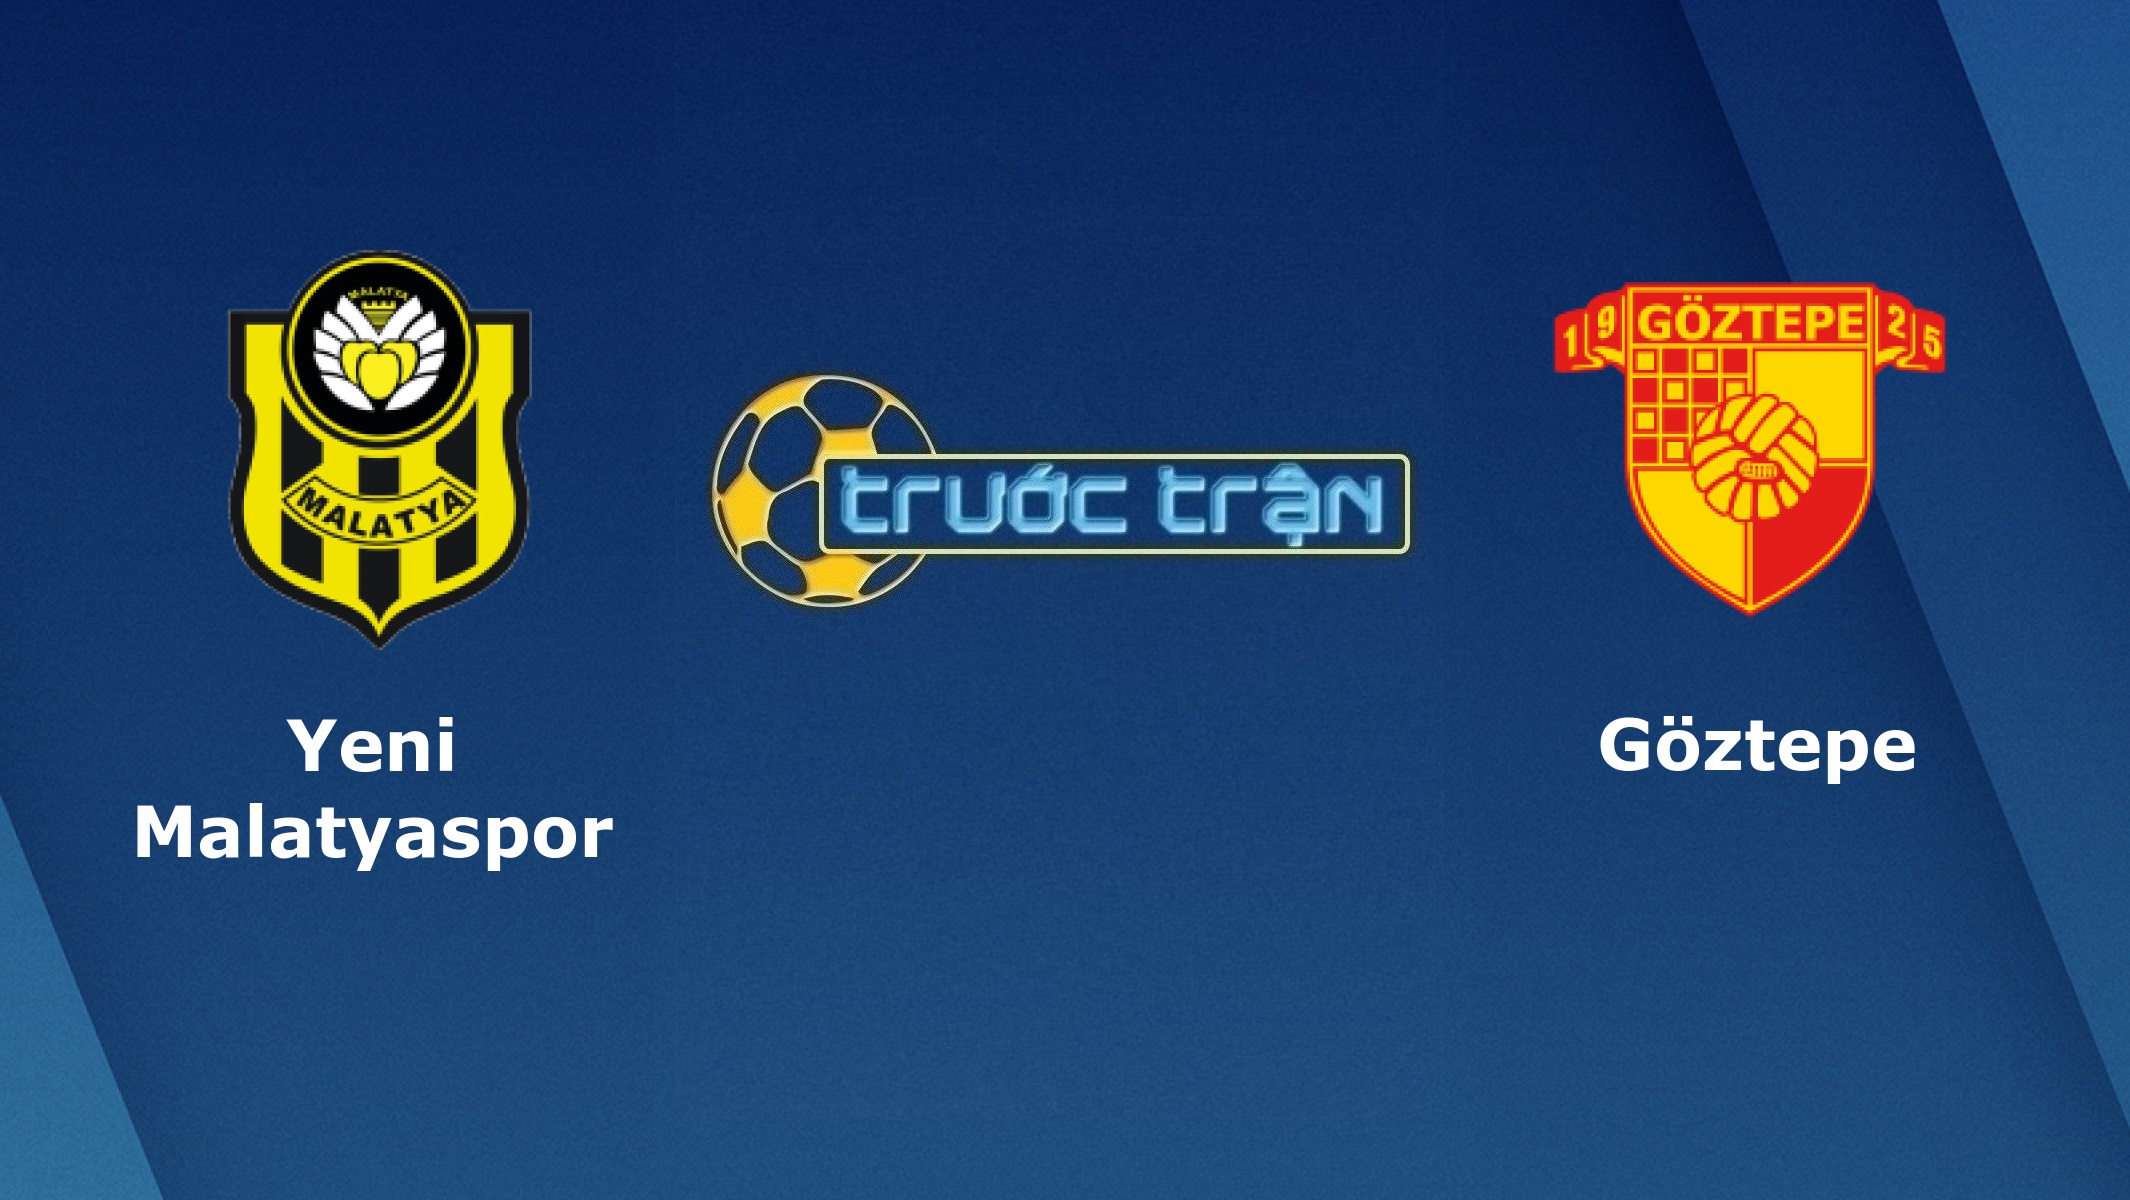 Yeni Malatyaspor vs Goztepe – Tip kèo bóng đá hôm nay – 19/09